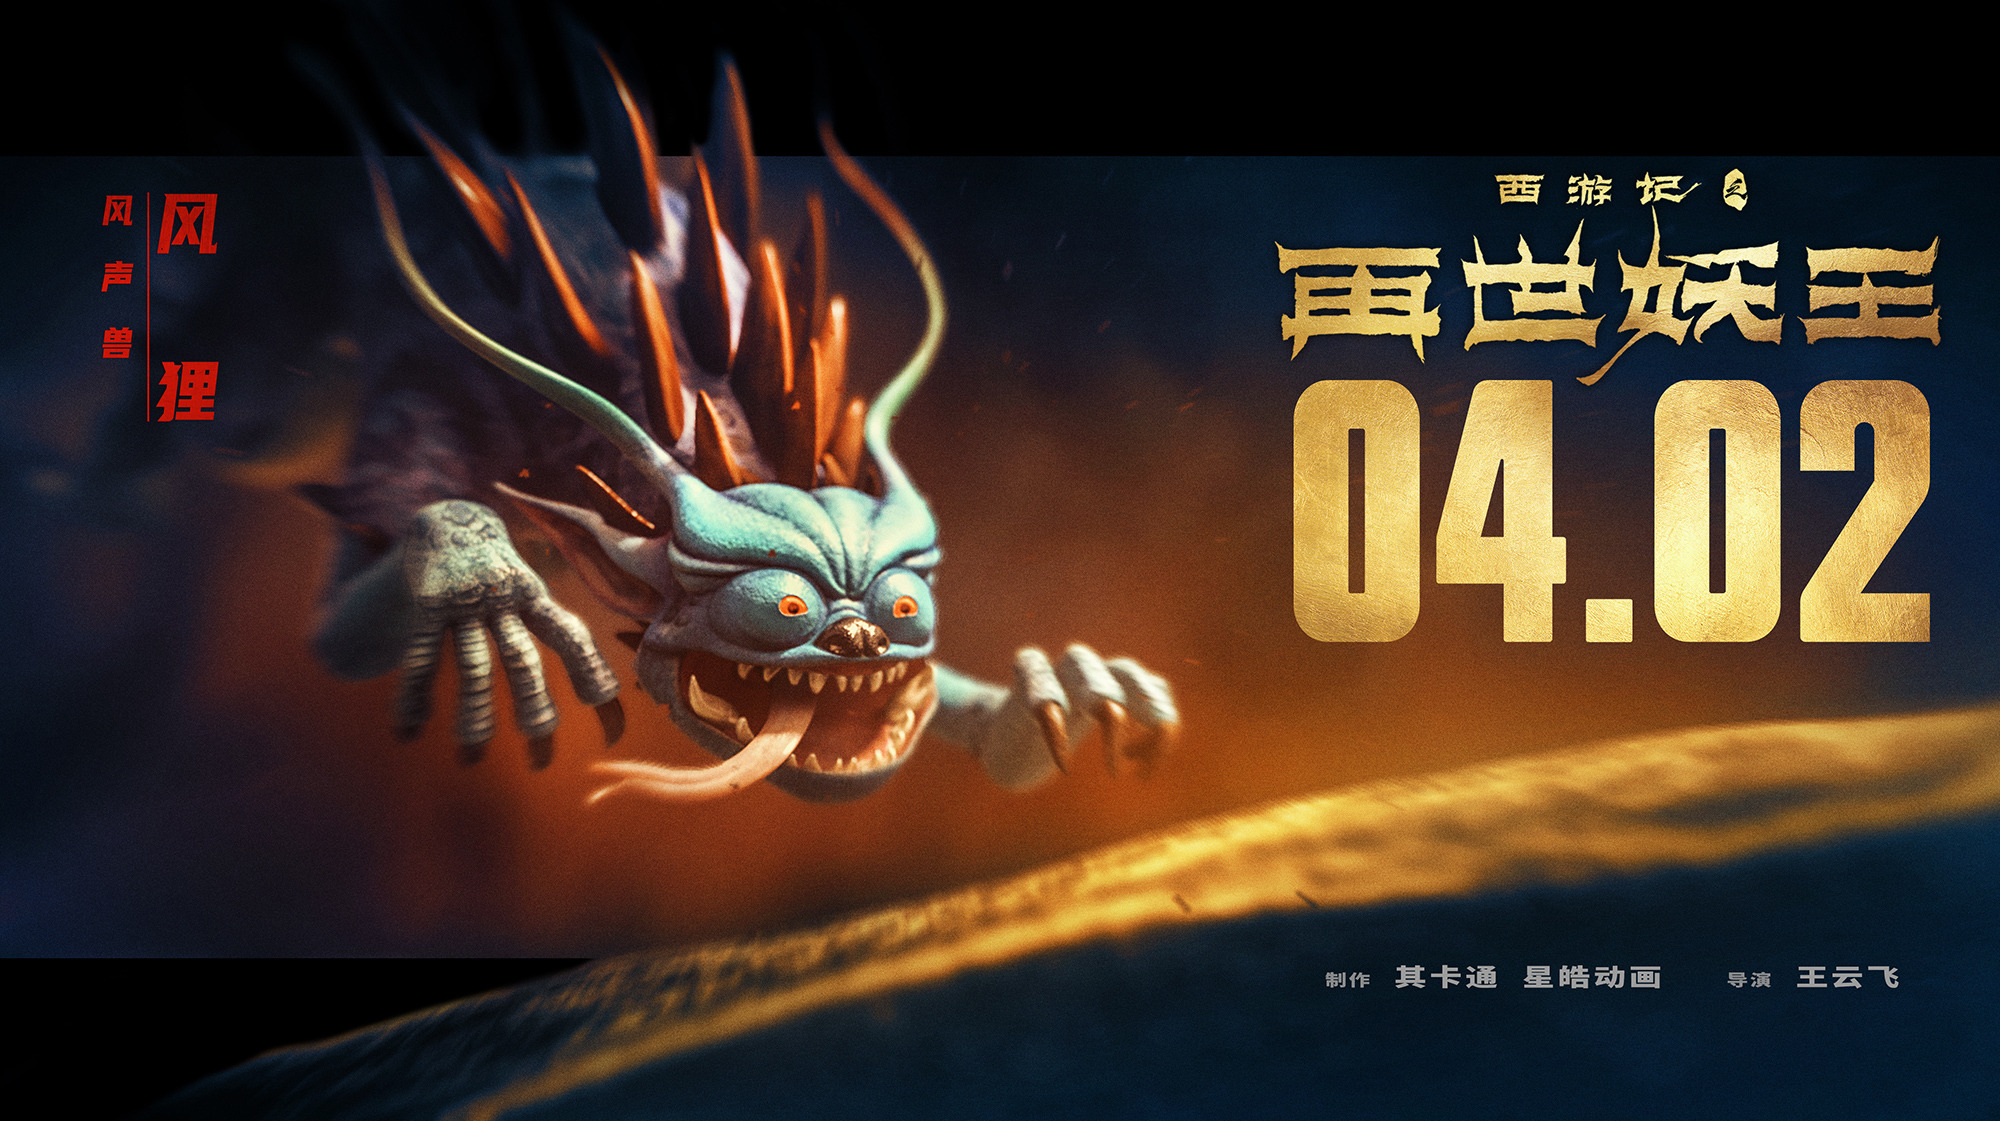 Mega Sized Movie Poster Image for Xi You Ji Zhi Zai Shi Yao Wang (#19 of 21)